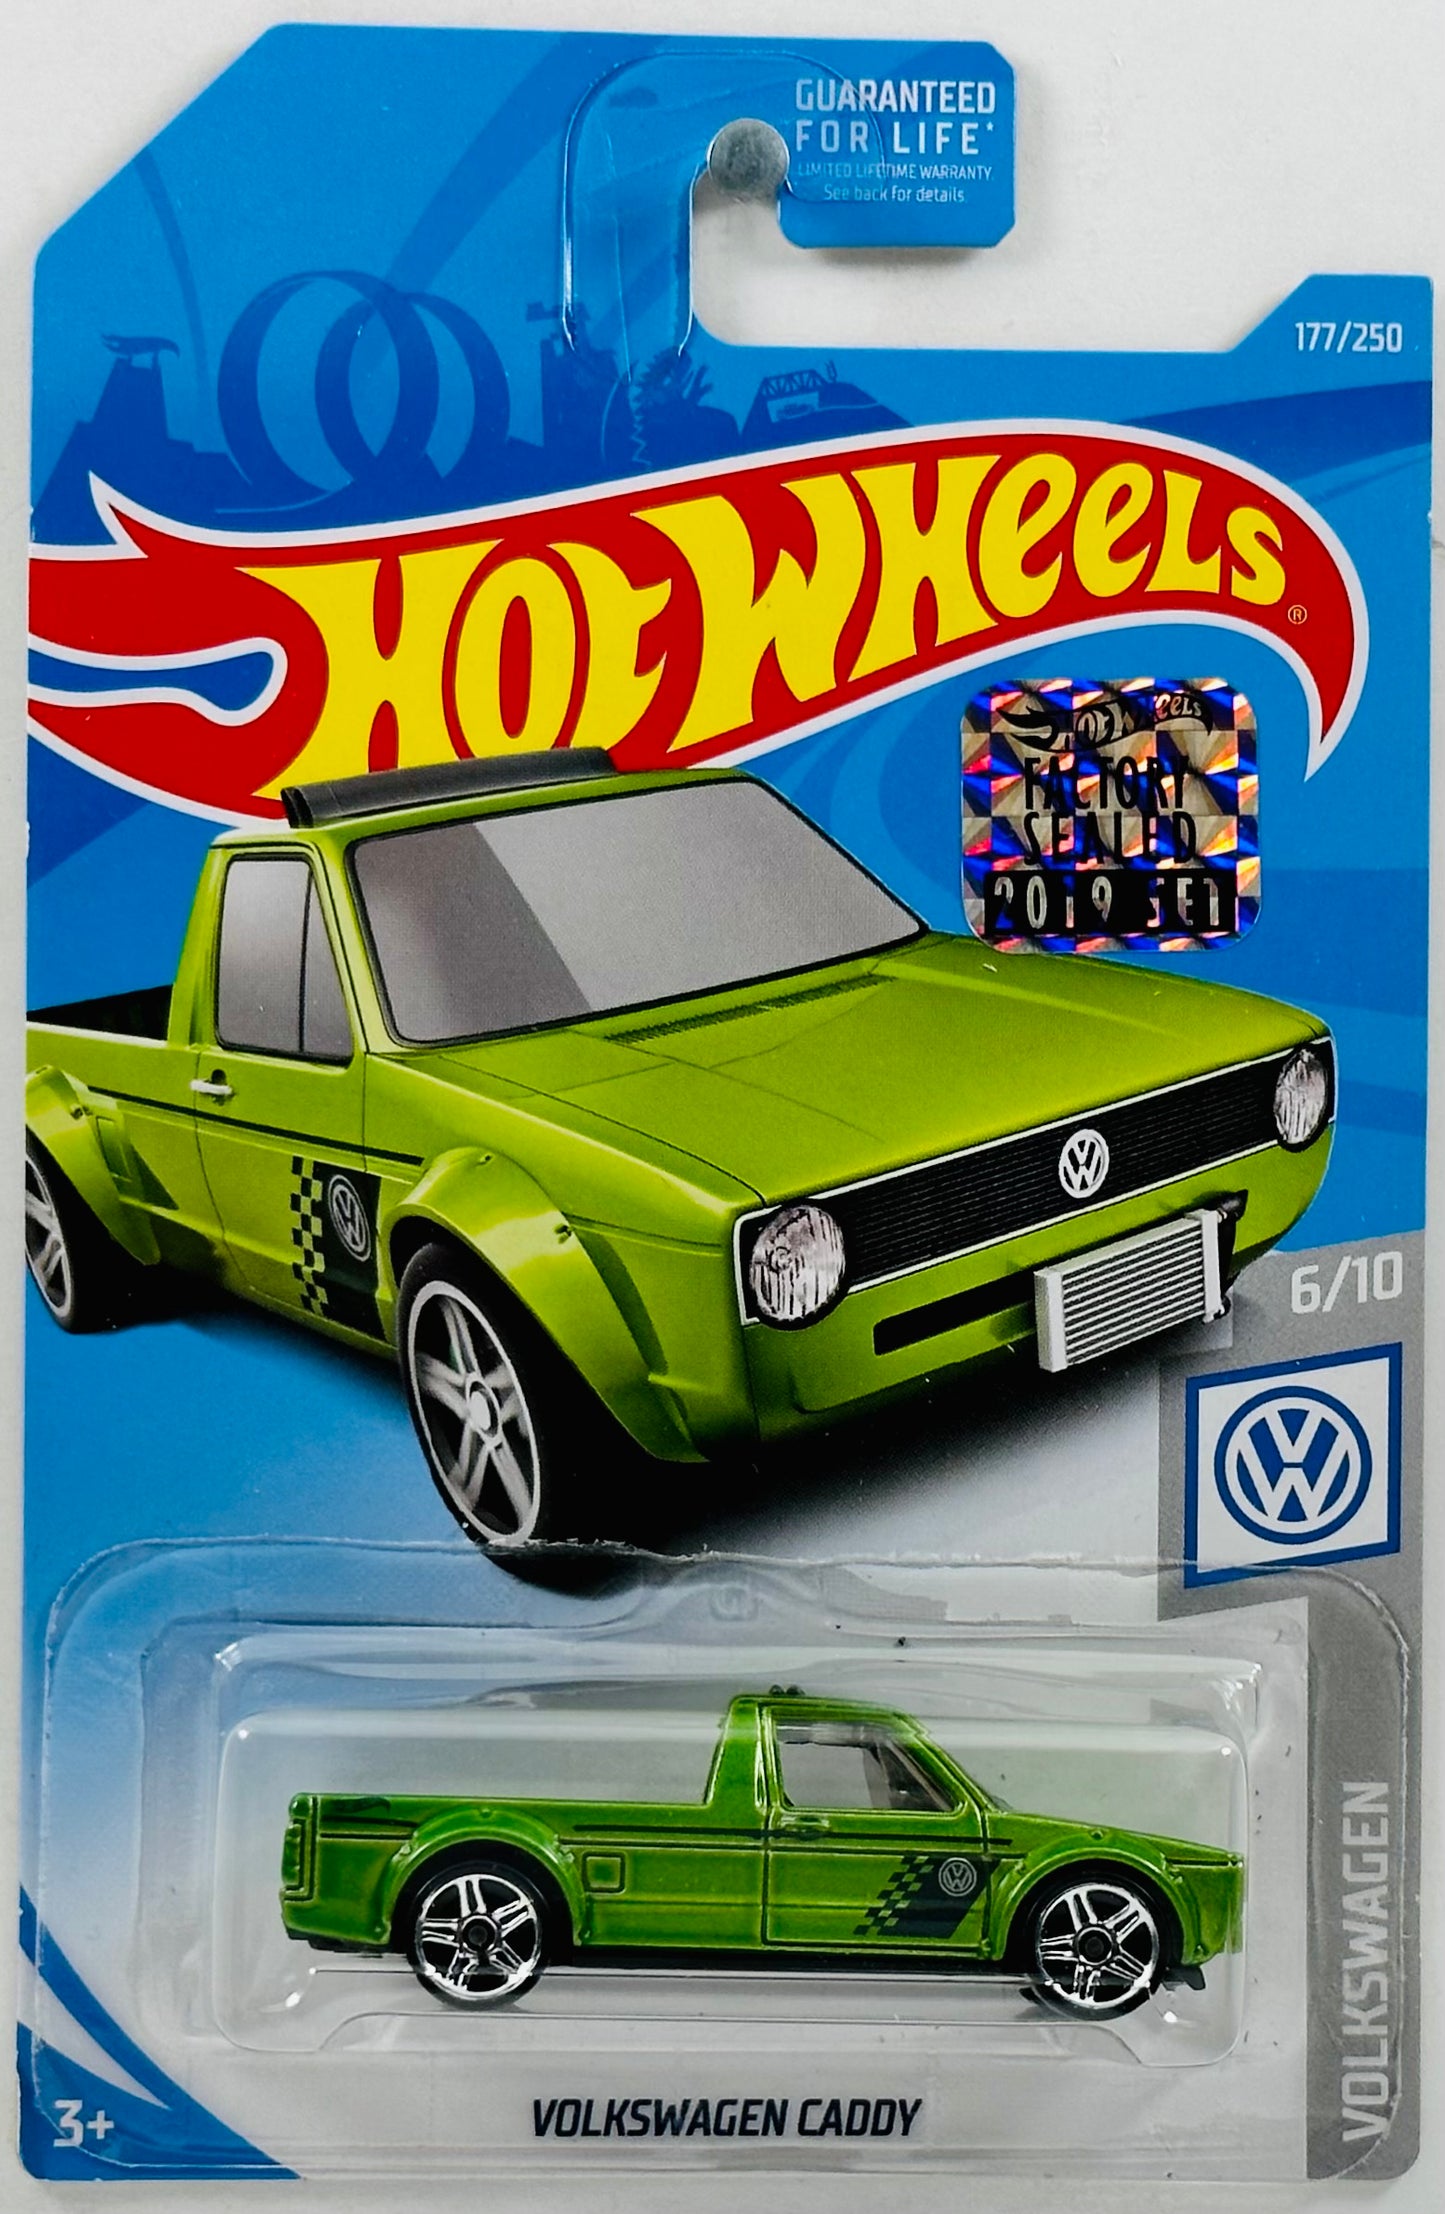 Hot Wheels 2019 - Collector # 177/250 - Volkswagen 6/10 - Volkswagen Caddy - Green - FSC